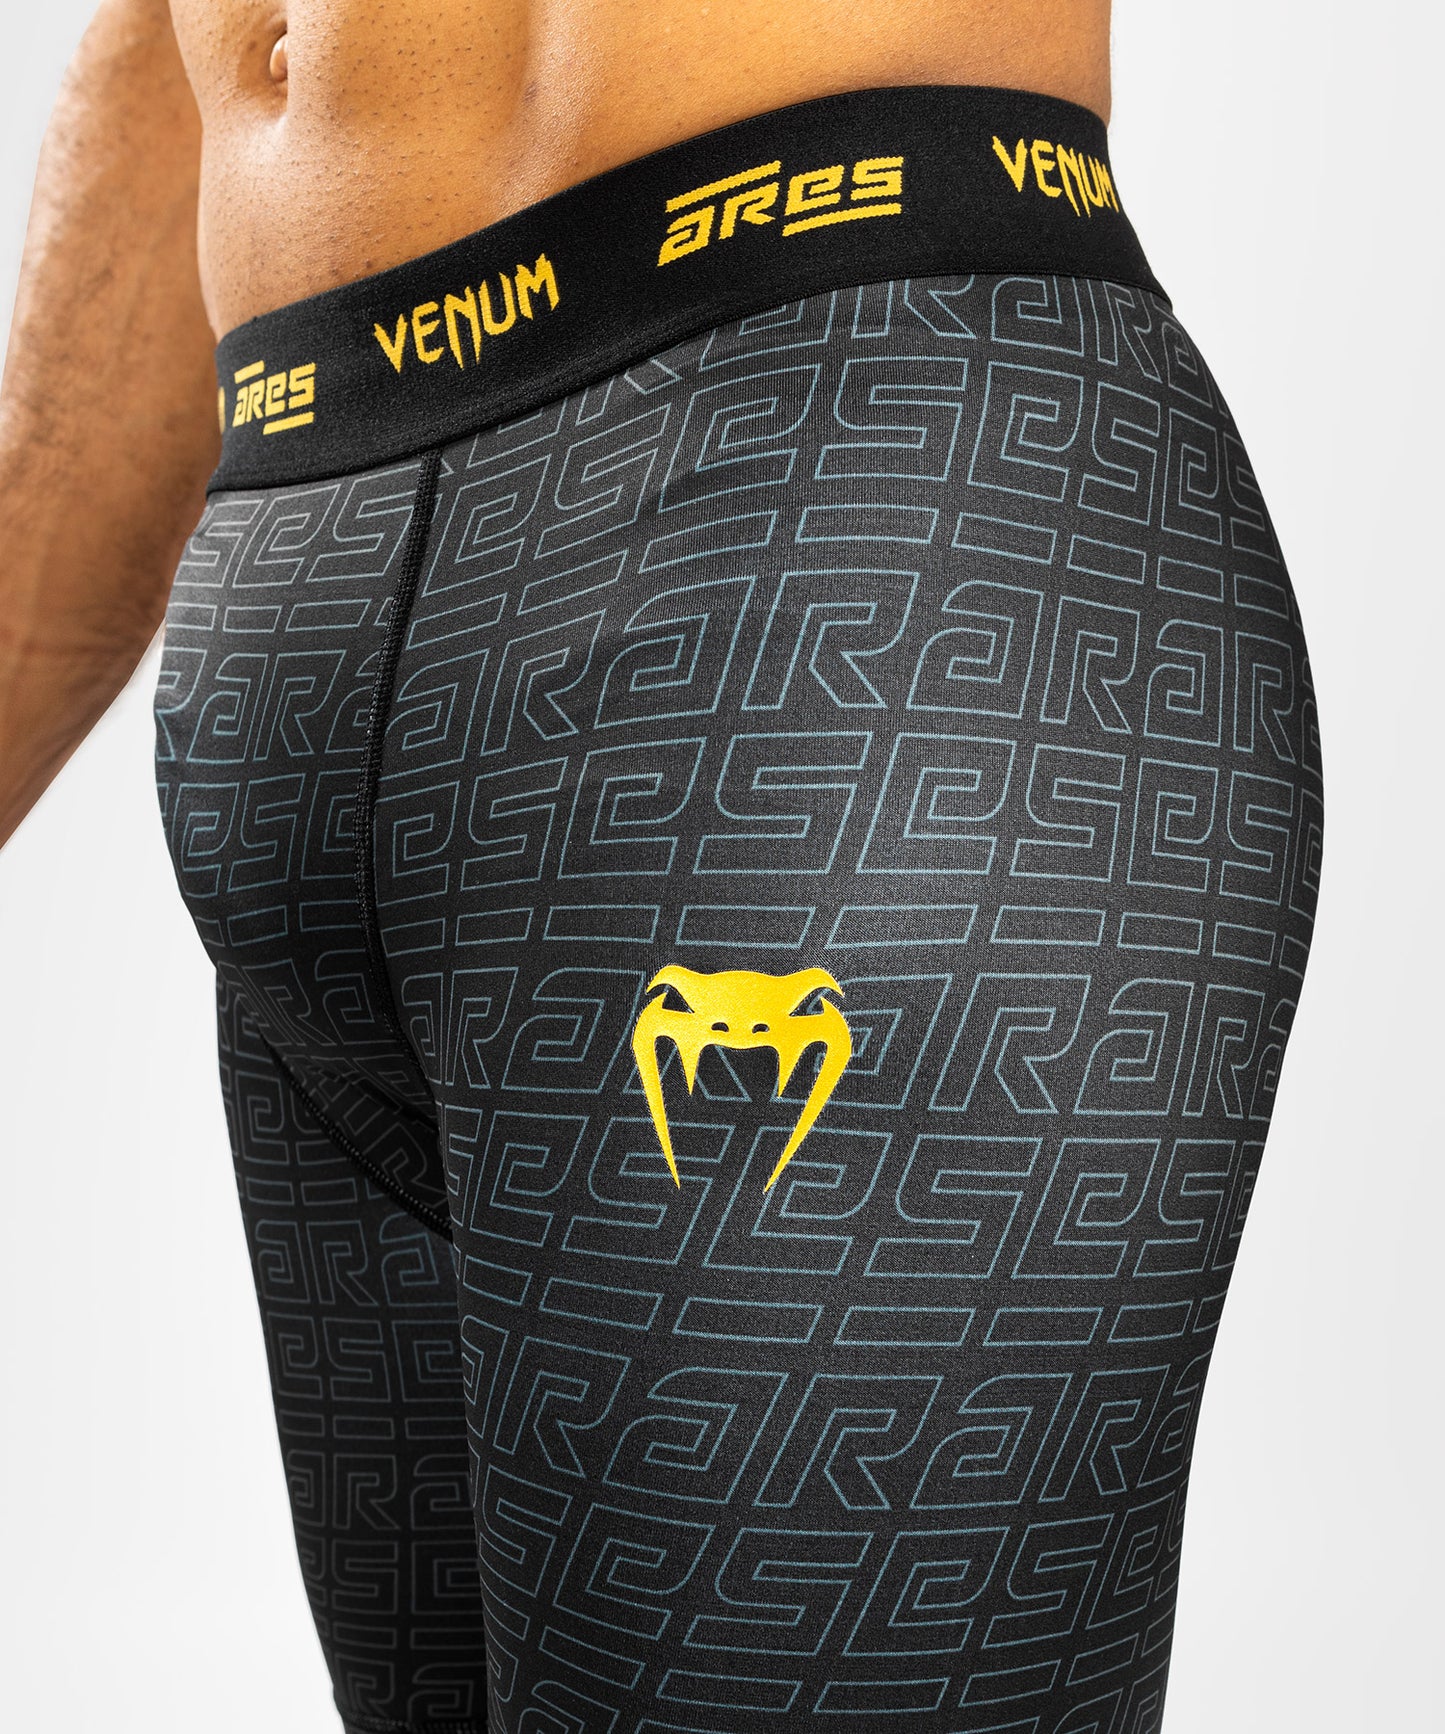 Venum x Ares 2.0 Pantalones cortos de compresión - Schwarz/Gold